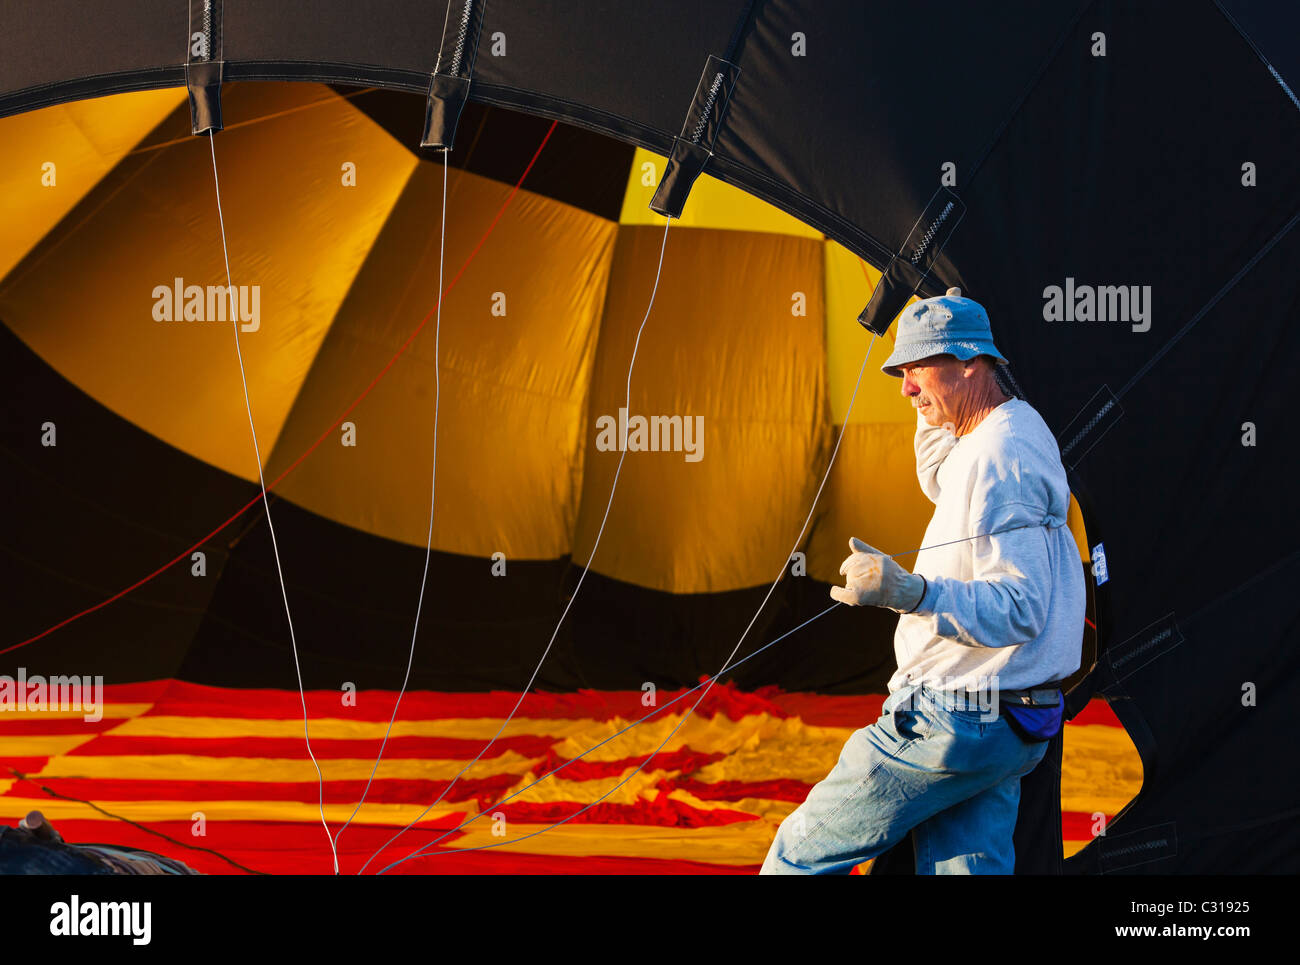 Un uomo che tiene il pallone aprire come si riempie di aria. Albuquerque, Nuovo Messico, Stati Uniti d'America. Foto Stock